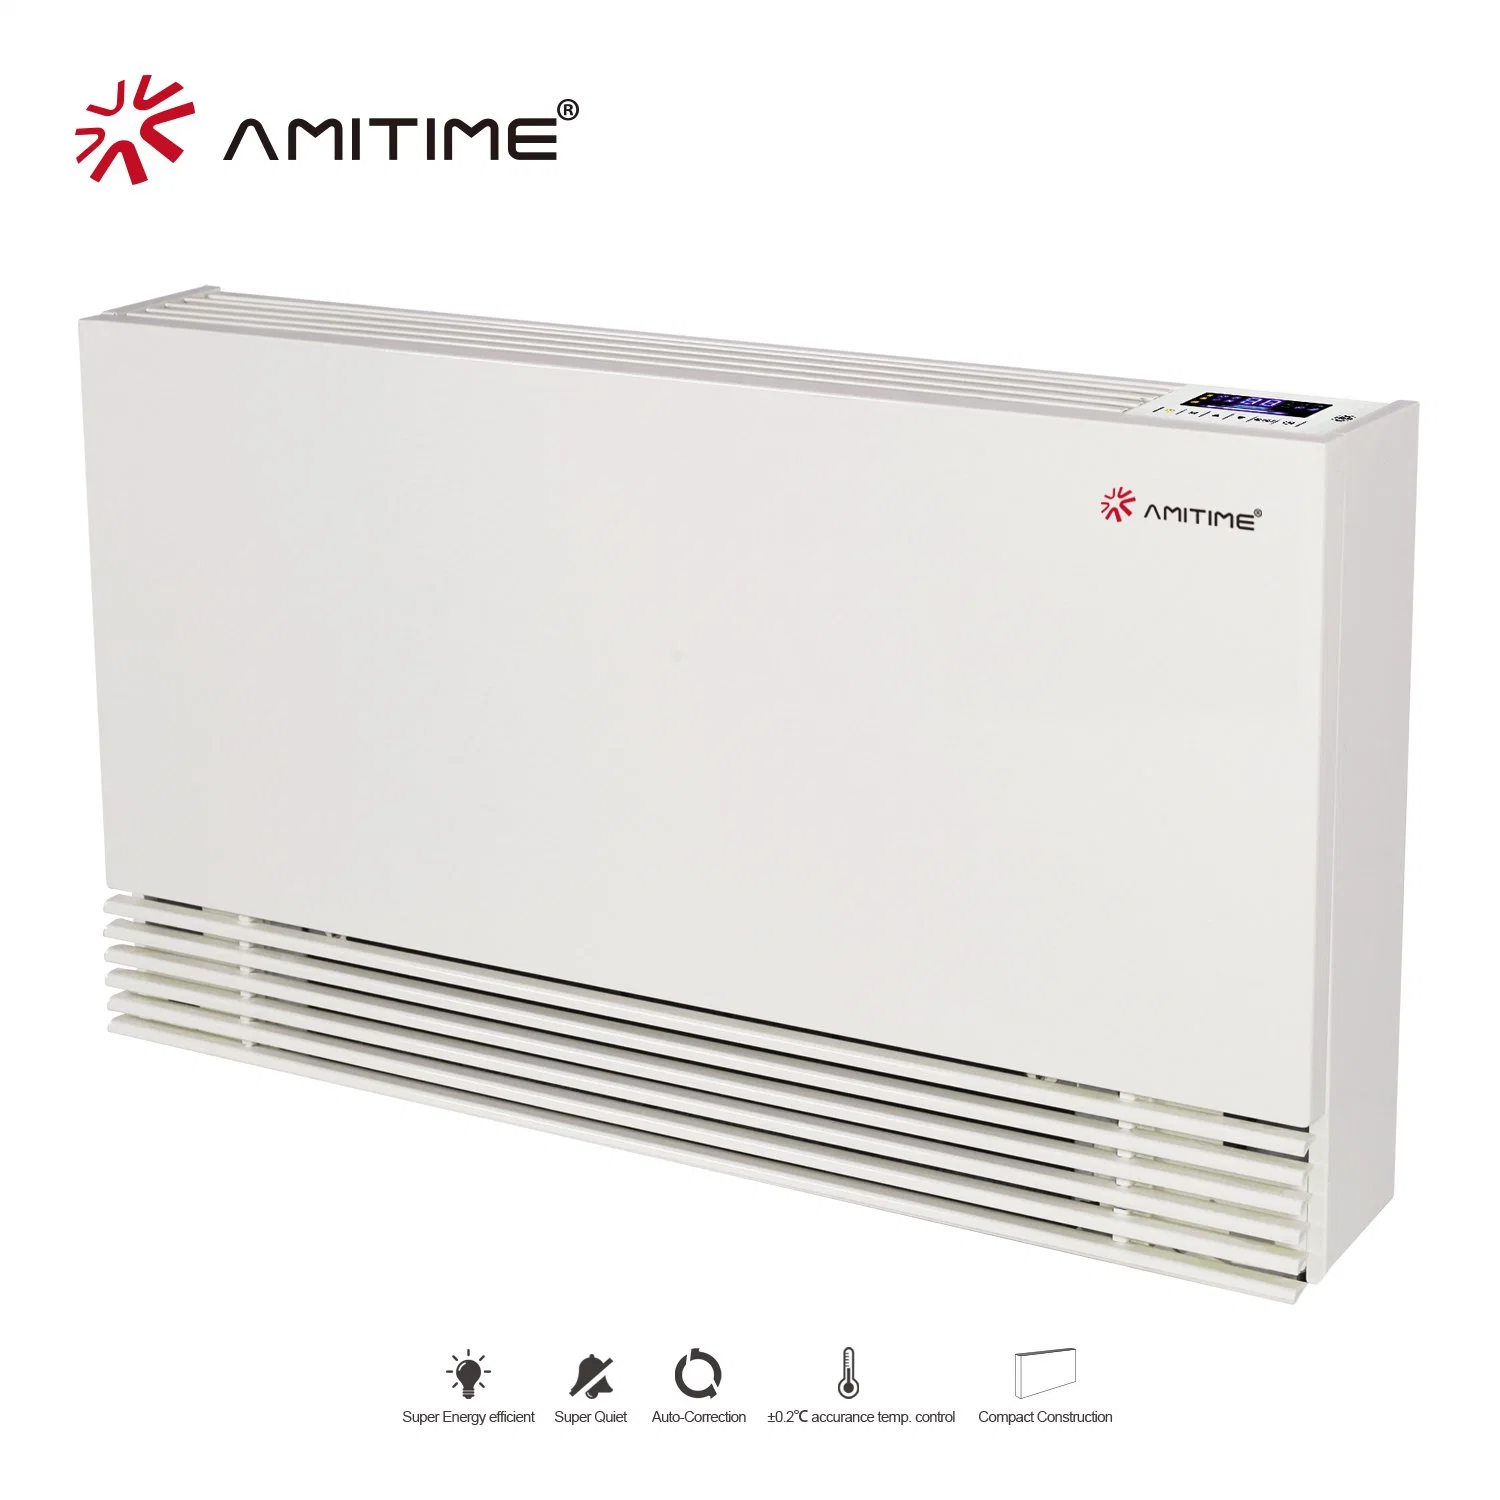 El agua RoHS aprobado Amitime caja de cartón en la pared del sistema de refrigeración